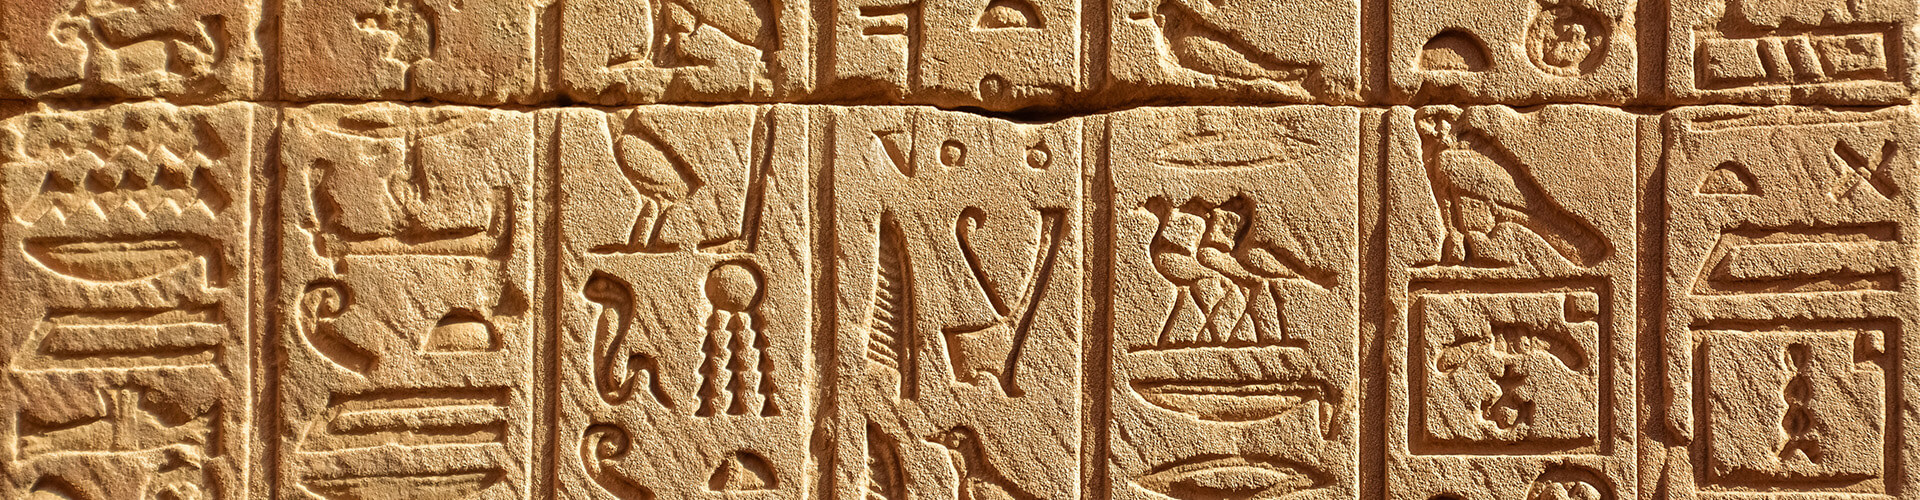 Egyptian writing 